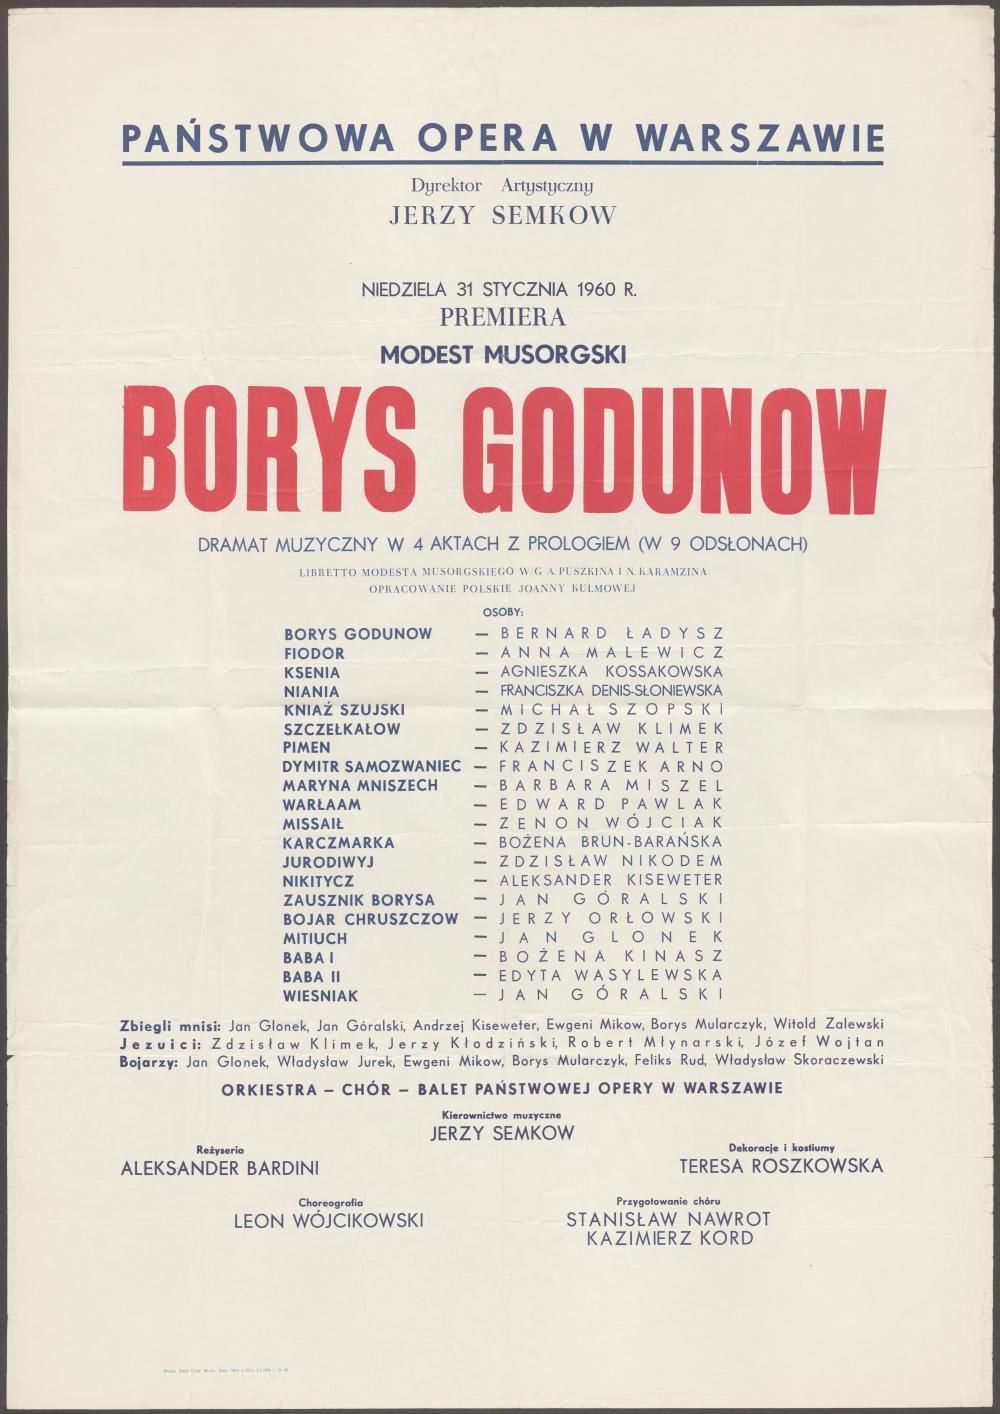 Afisz premierowy. „Borys Godunow” Modest Musorgski 31-01-1960